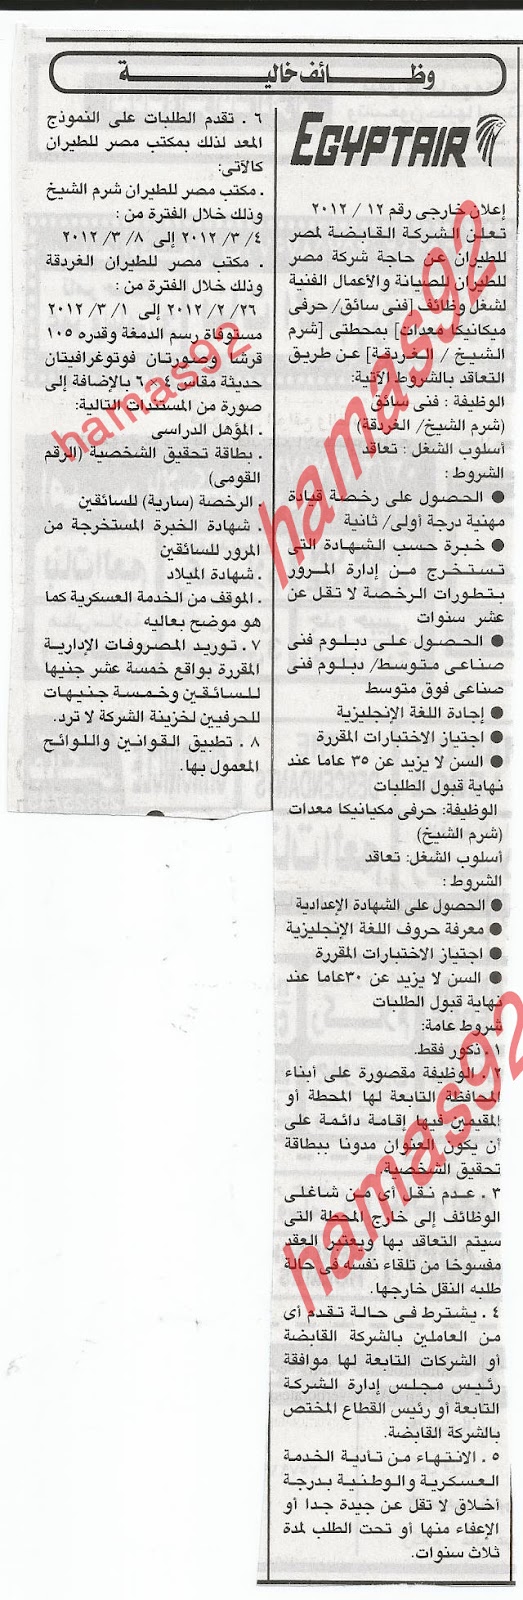 وظائف خالية فى شركة مصر للطيران 17/2/2012 من جريدة الاهرام  %D8%B4%D8%B1%D9%83%D8%A9+%D9%85%D8%B5%D8%B1+%D9%84%D9%84%D8%B7%D9%8A%D8%B1%D8%A7%D9%86